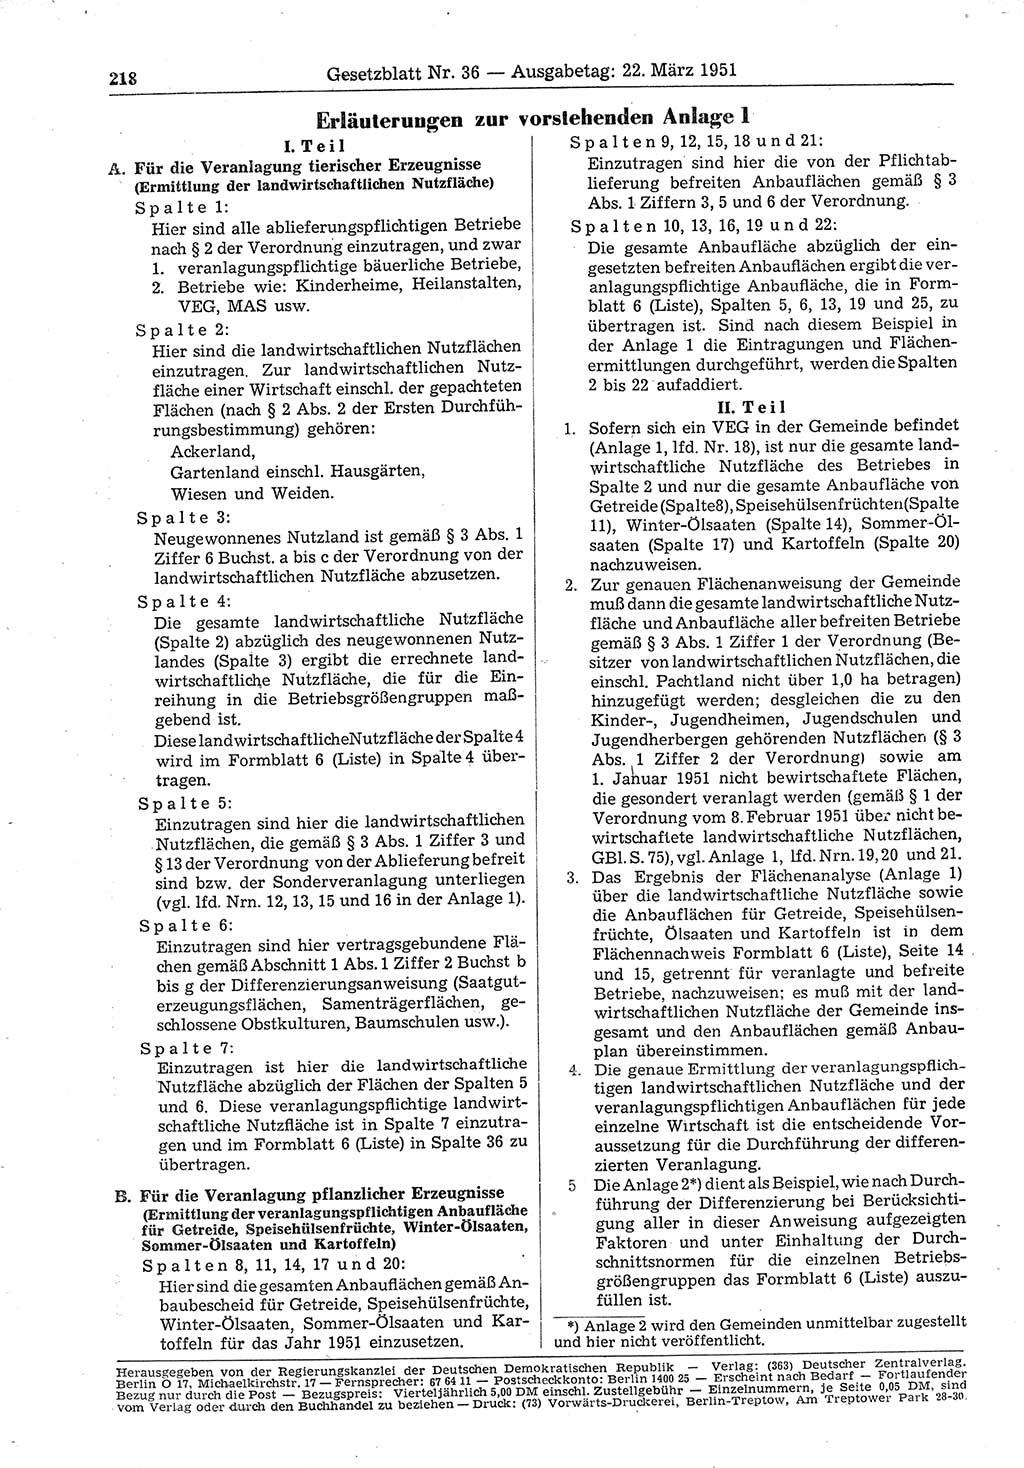 Gesetzblatt (GBl.) der Deutschen Demokratischen Republik (DDR) 1951, Seite 218 (GBl. DDR 1951, S. 218)